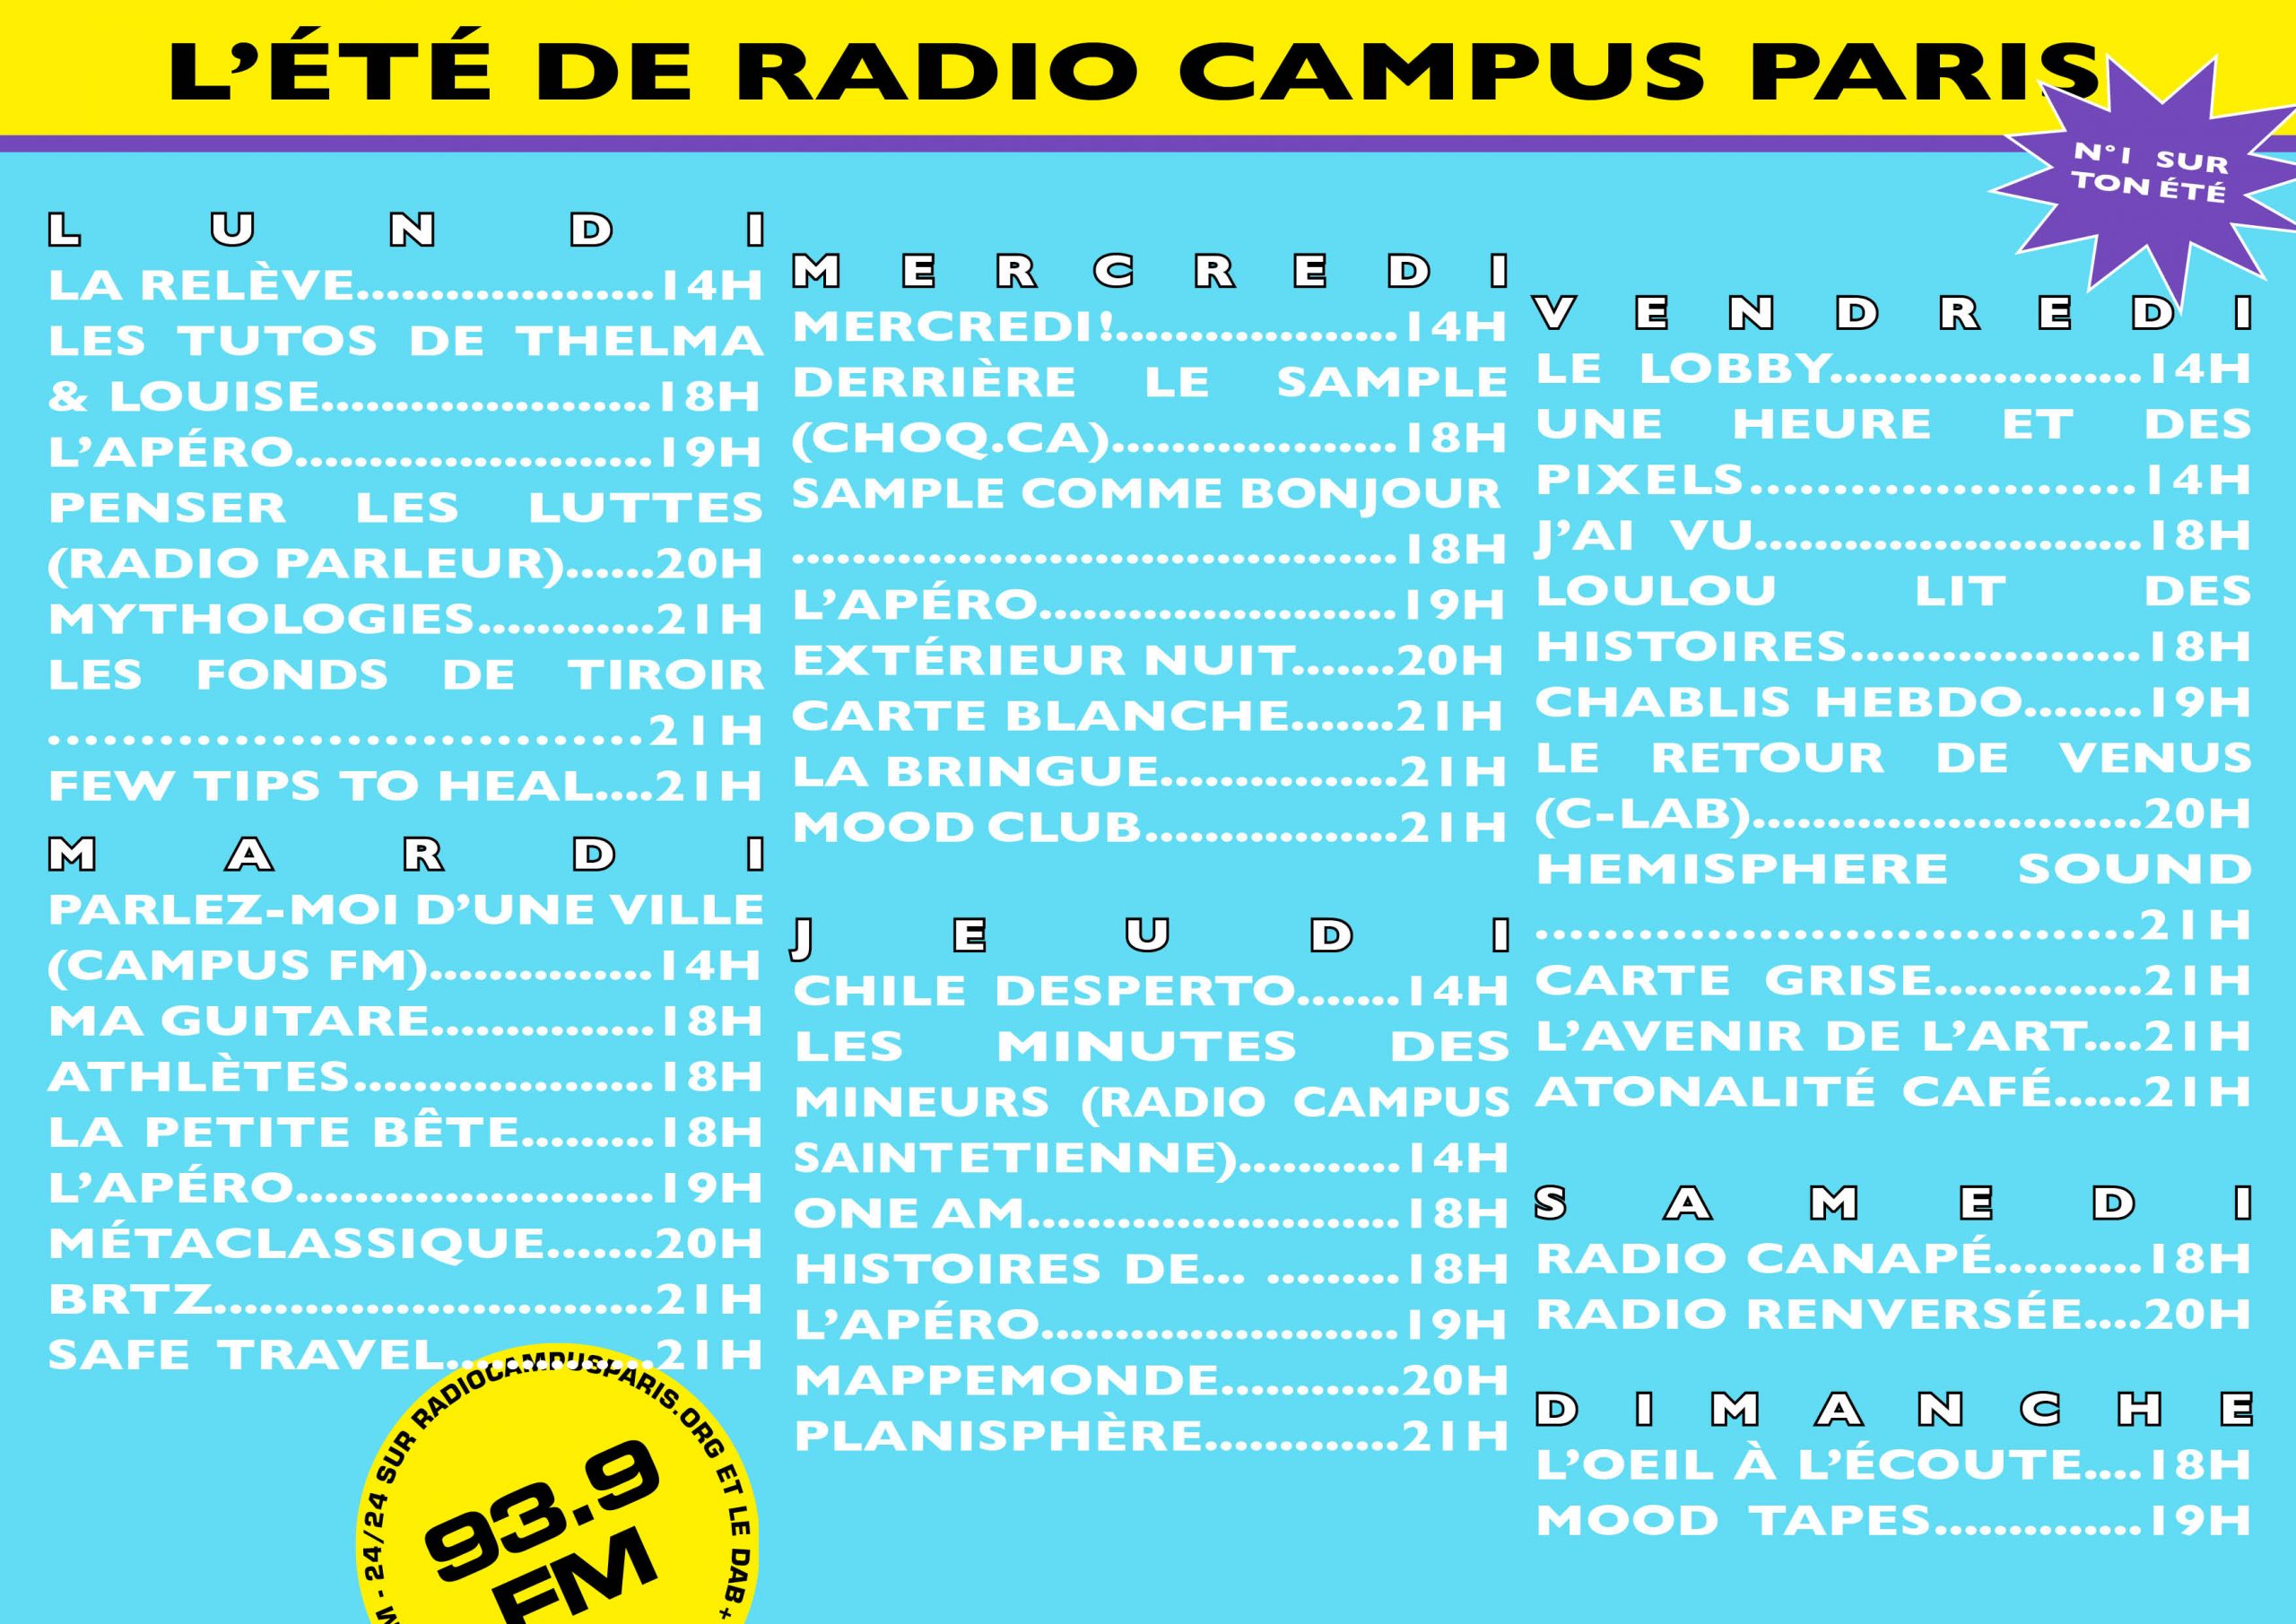 Quoi de prévu cet été pour Radio Campus Paris ?